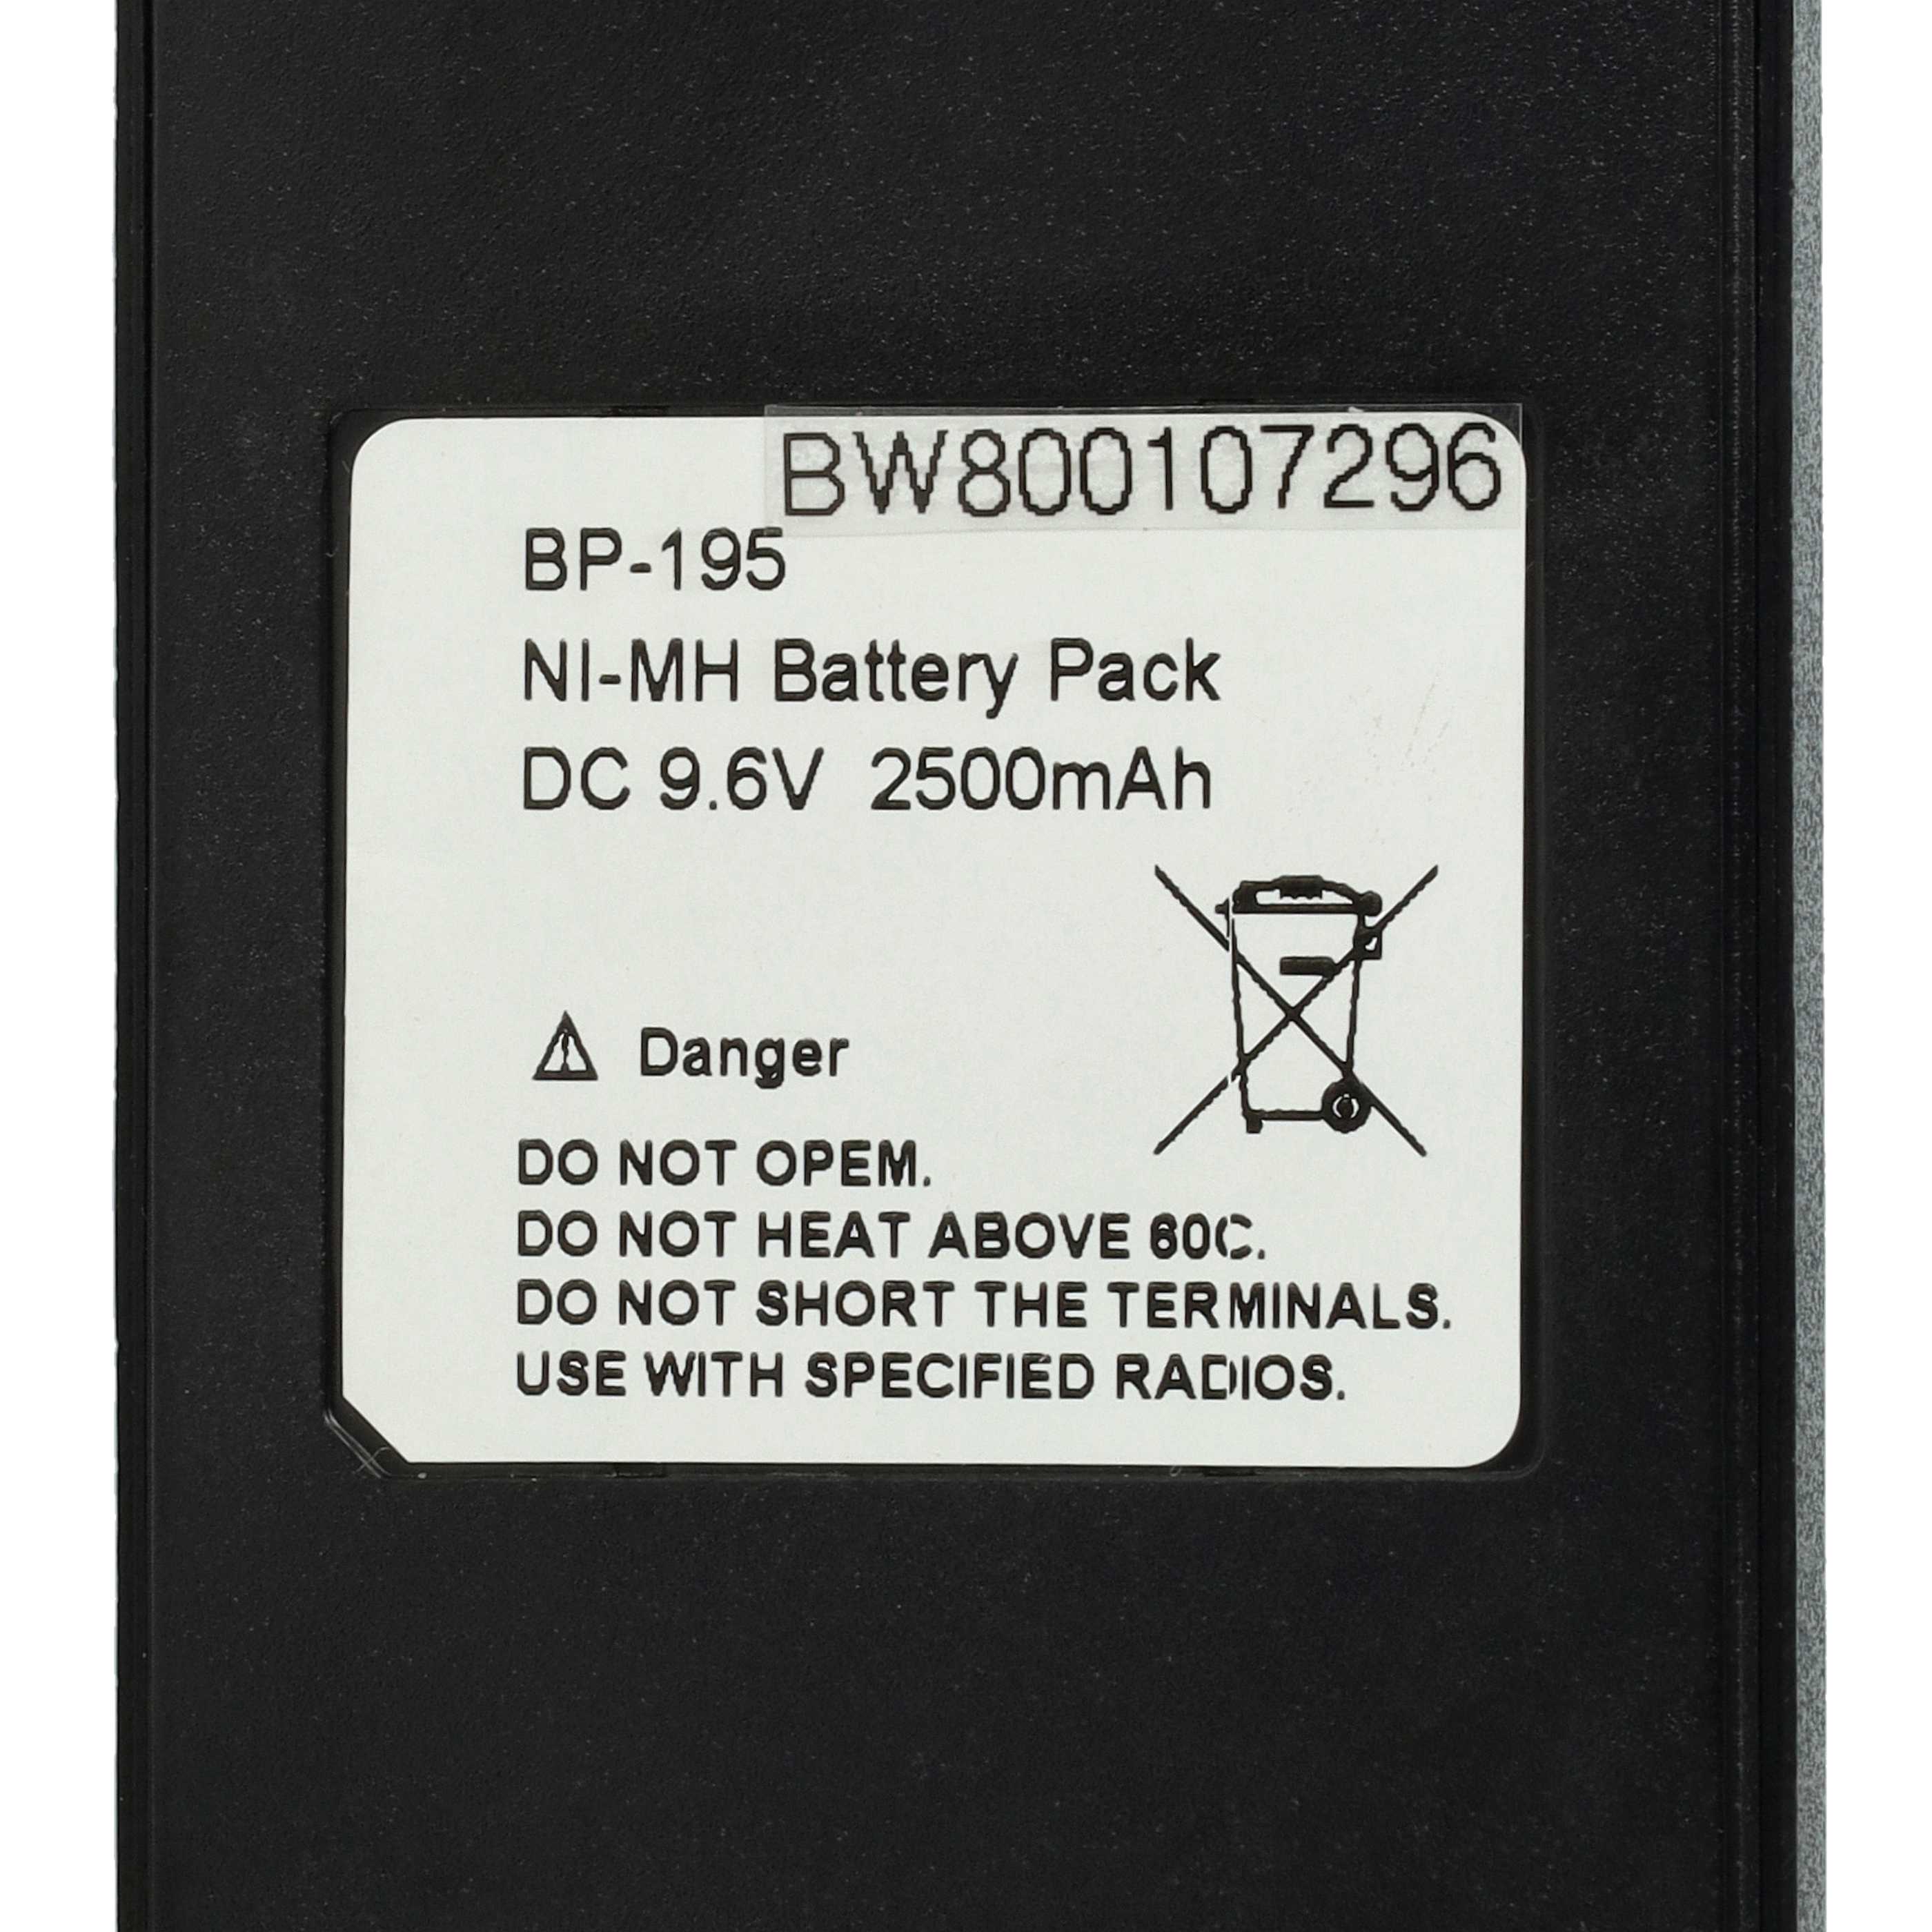 Radio Battery Replacement for Icom BP-195, BP-196H, BP-196, BP-196R - 2500mAh 9.6V NiMH + Belt Clip